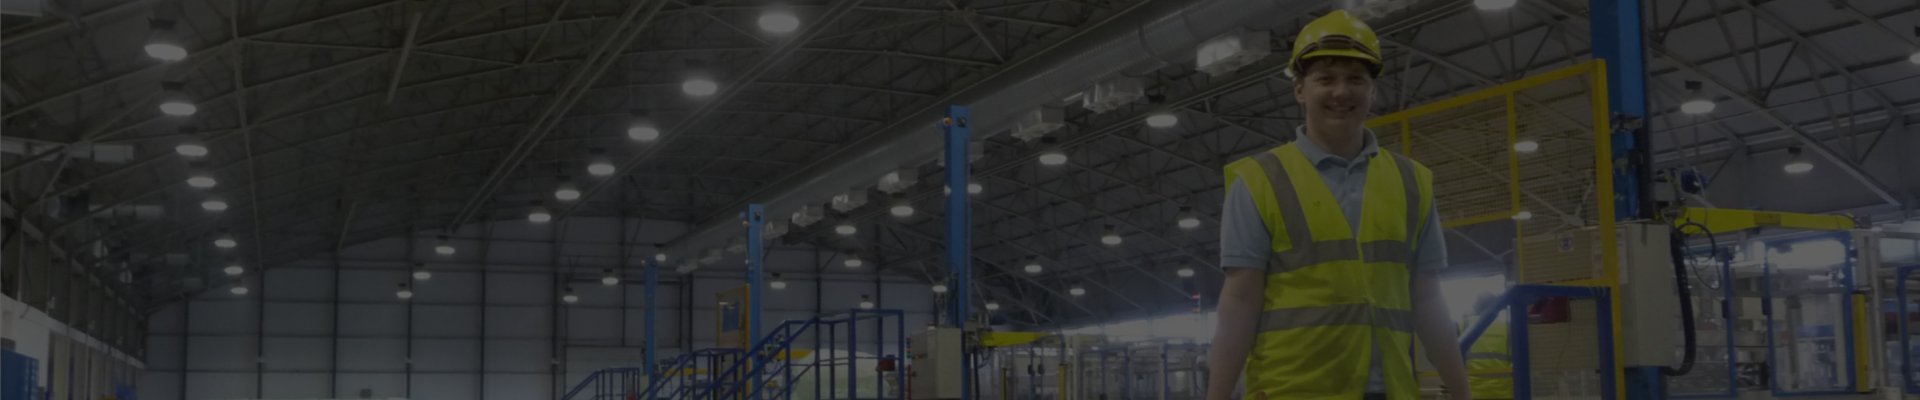 Industrial Lighting for Factories